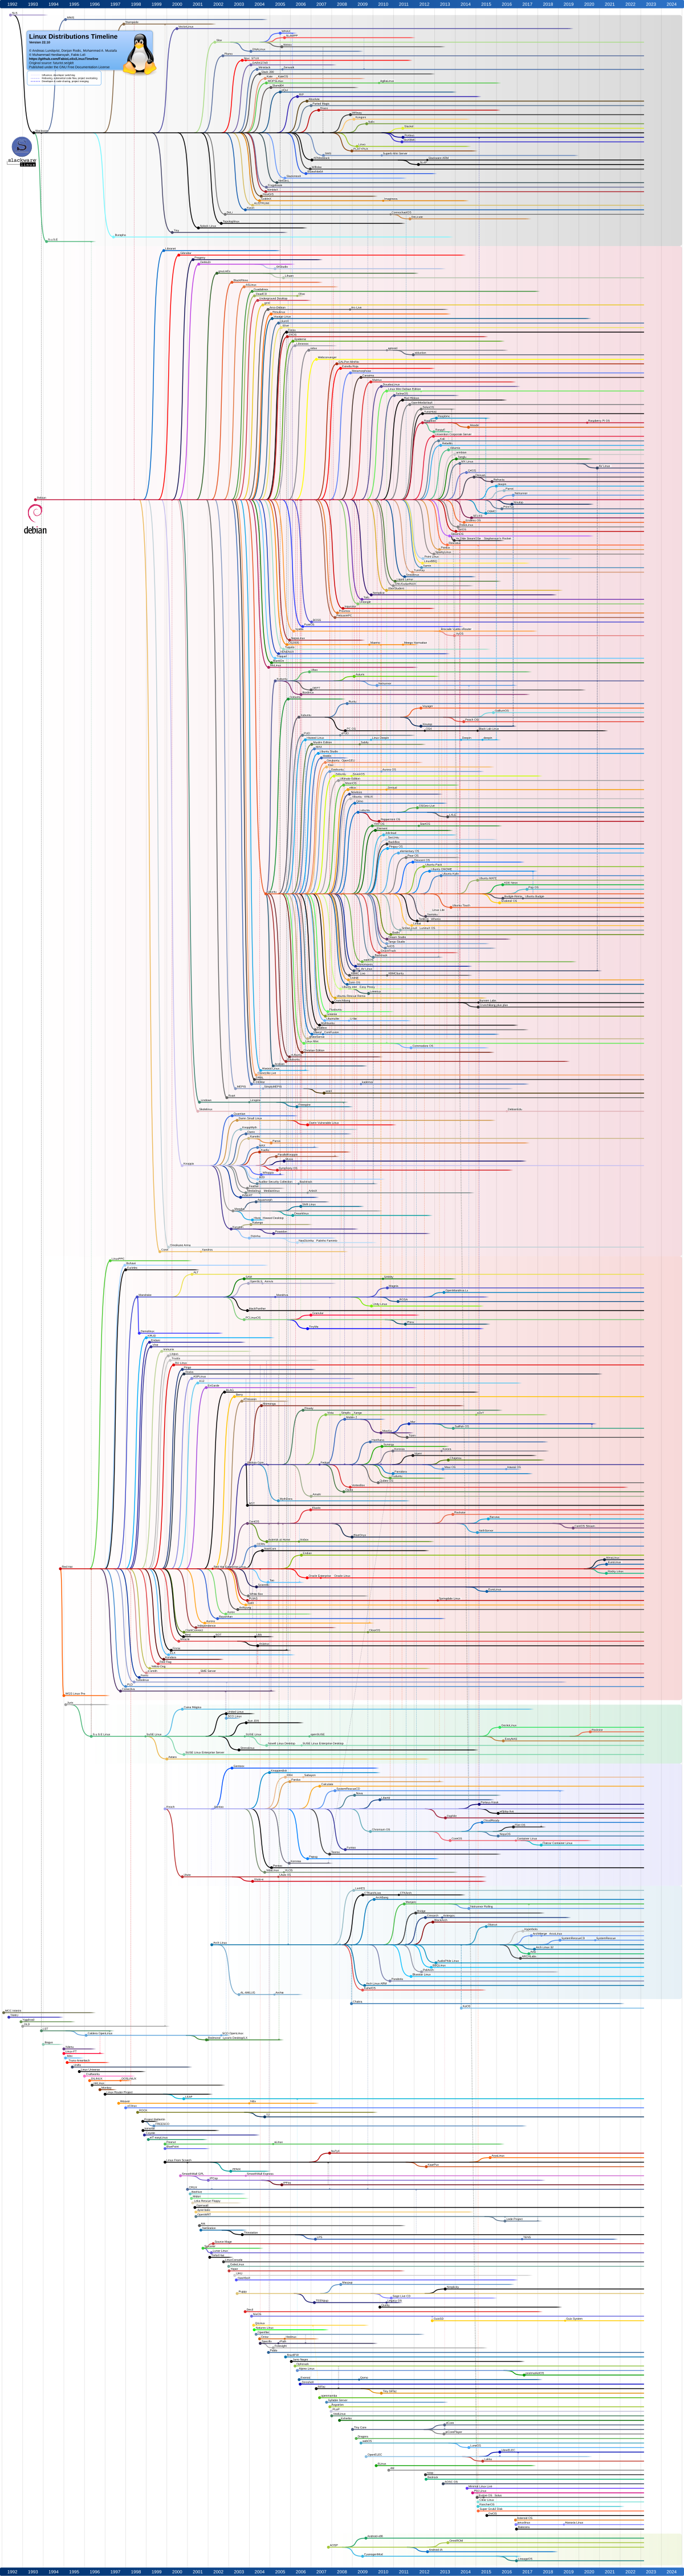 Linux_Distribution_Timeline